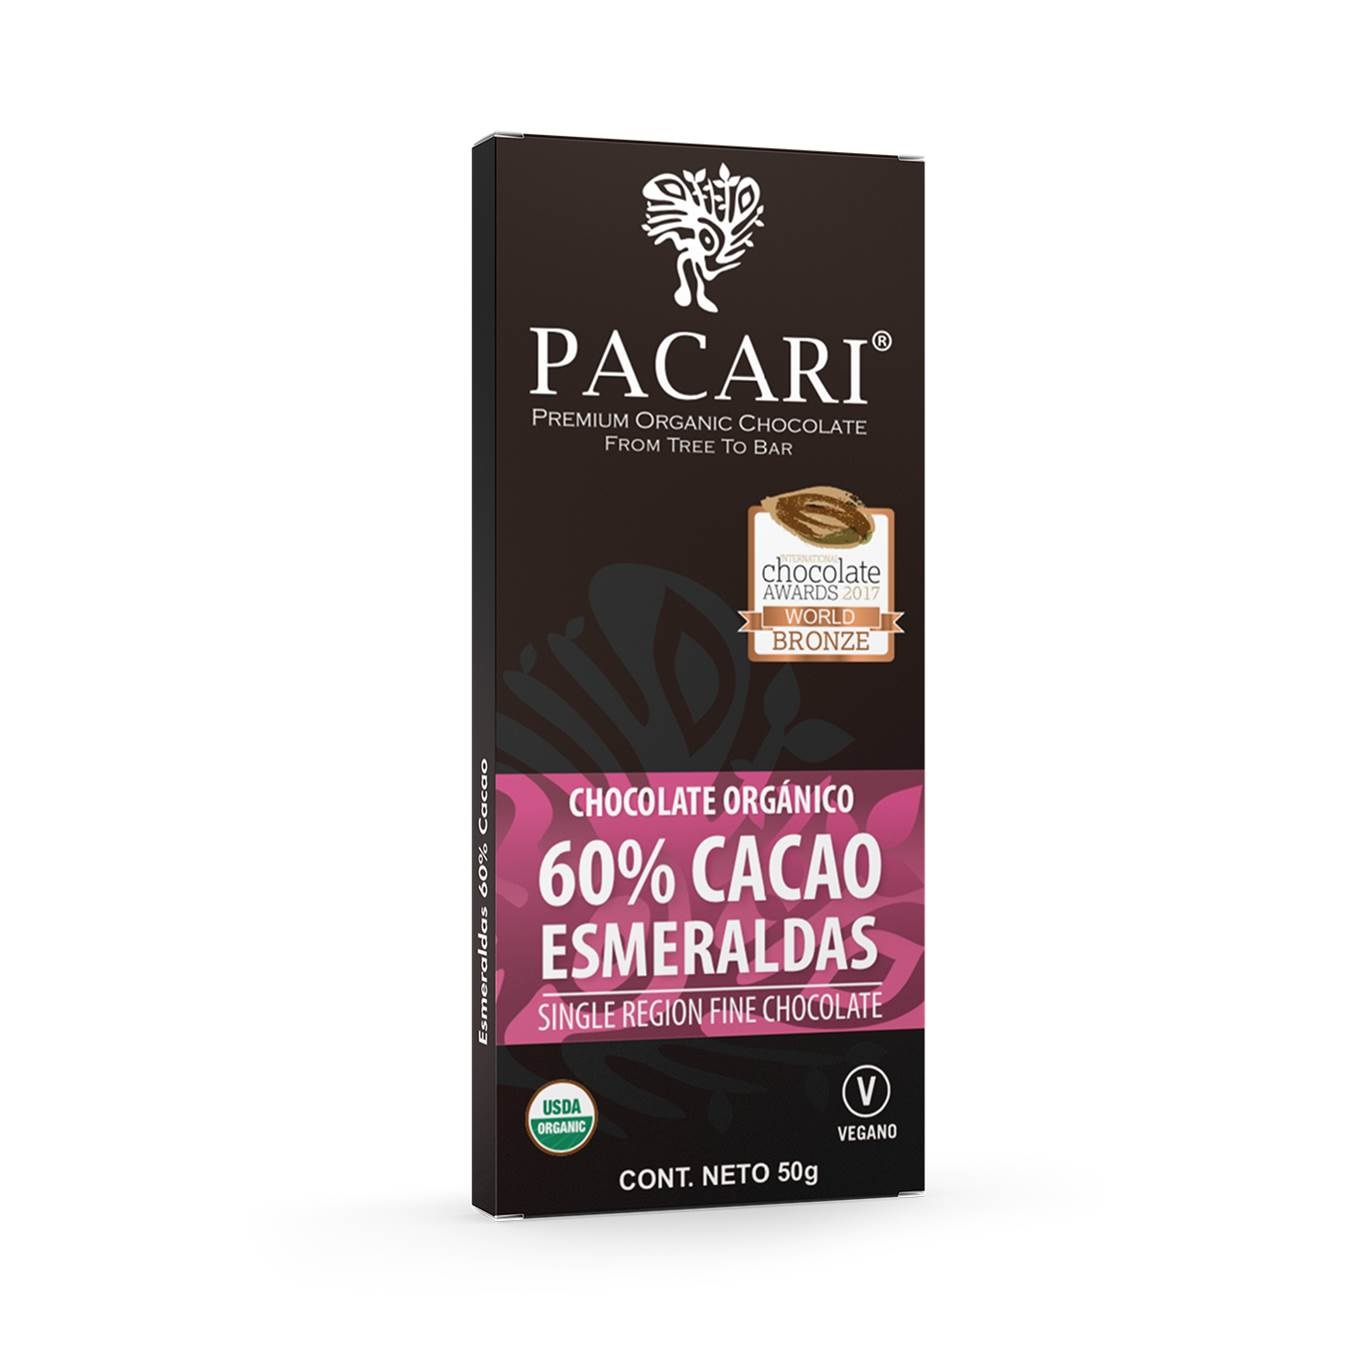 Chocolate barra 60% cacao Esmeraldas